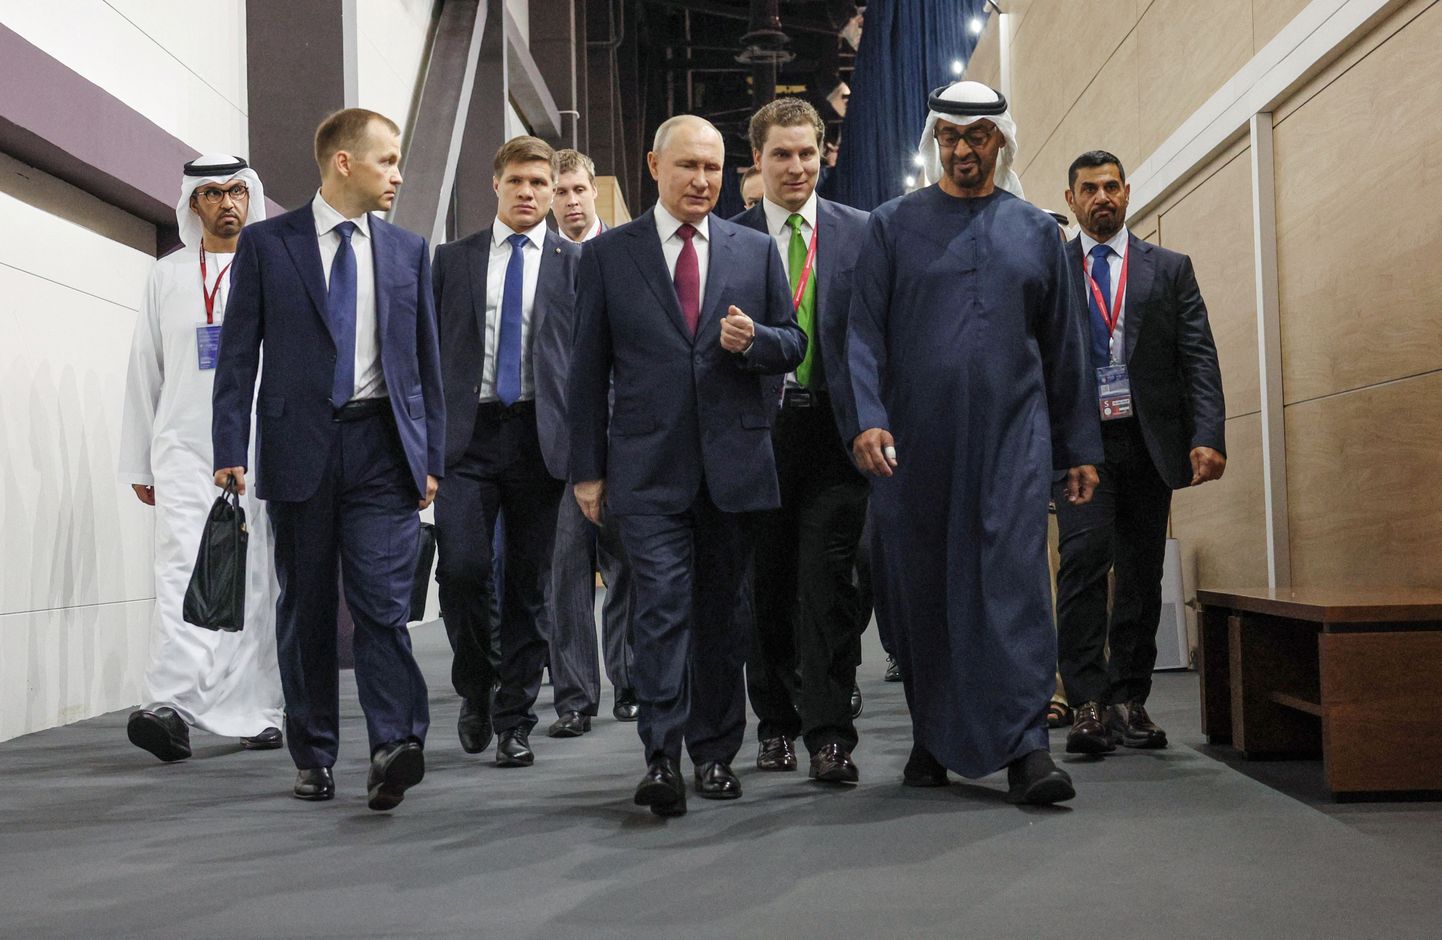 Venemaa president Vladimir Putin ja Araabia Ühendemiraatide president šeik Mohammed bin Zayed Al Nahyan Peterburi rahvusvahelisel majandusfoorumil (SPIEF) 16. juunil 2023